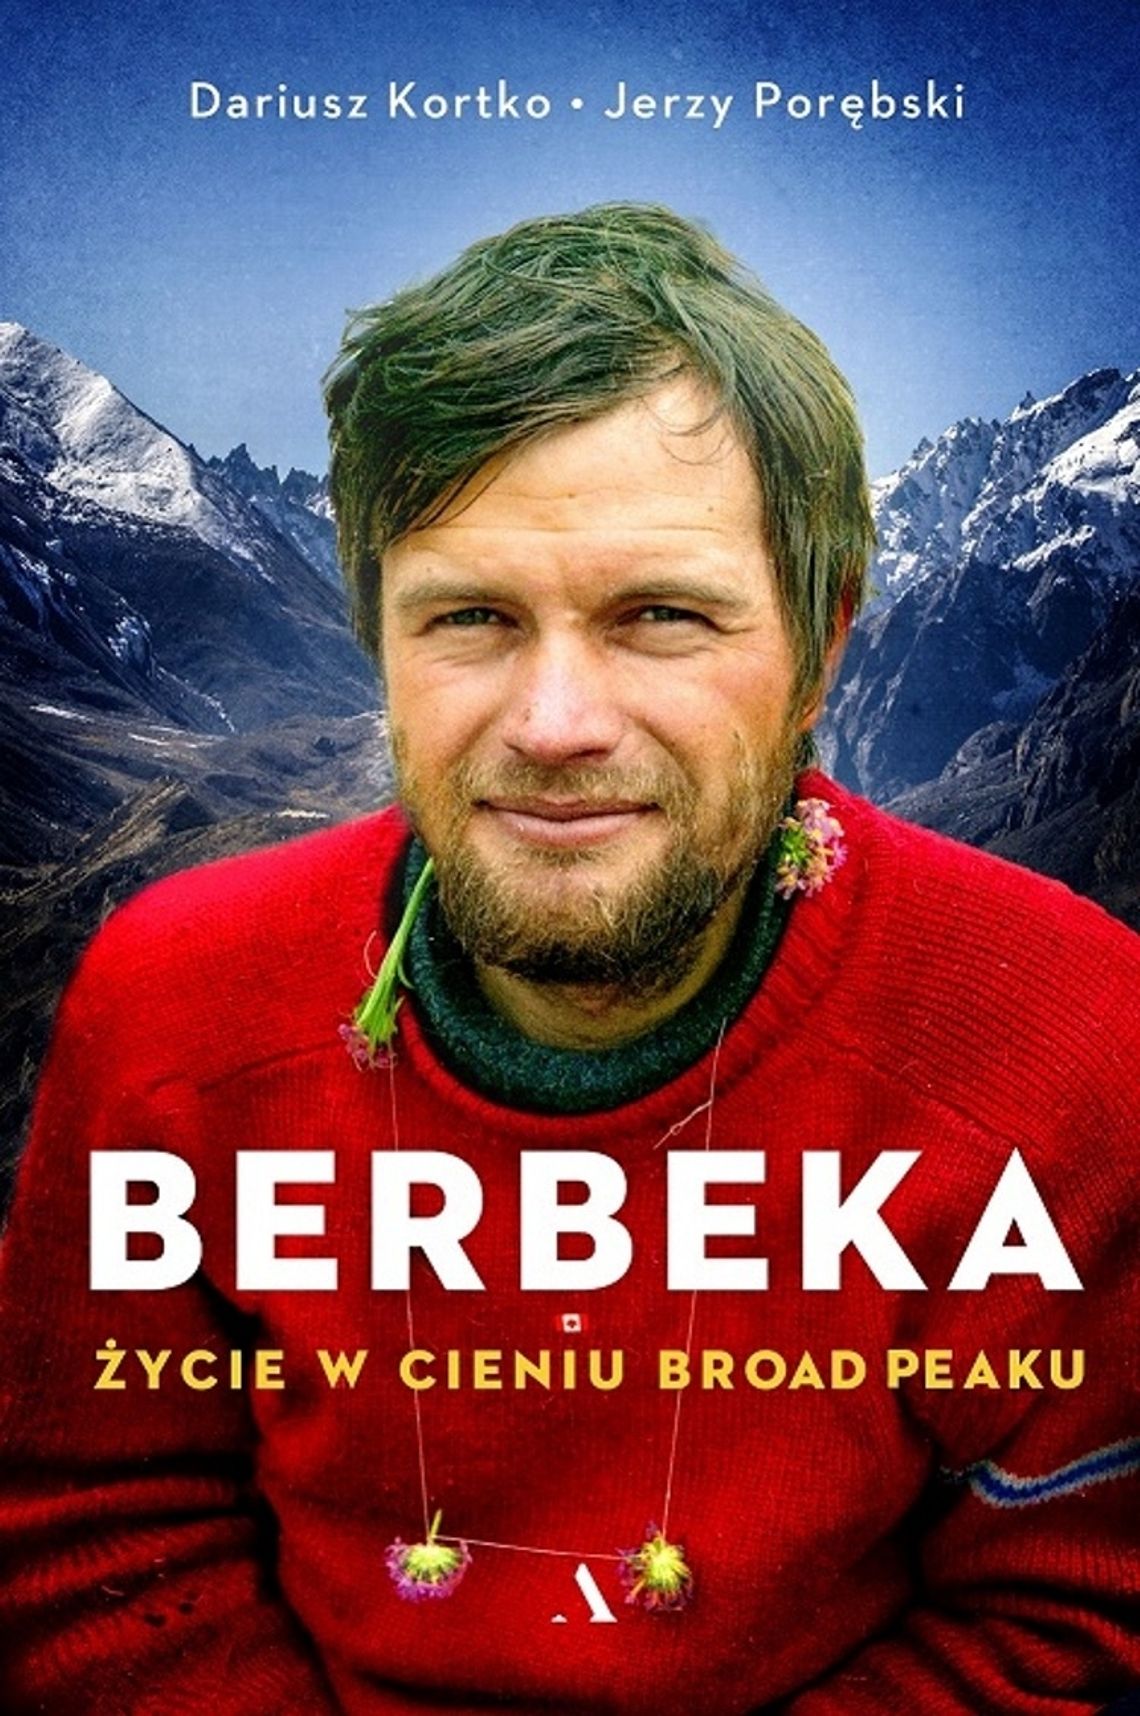 Polecam: “Maciej Berbeka. Życie w cieniu Broad Peaku”